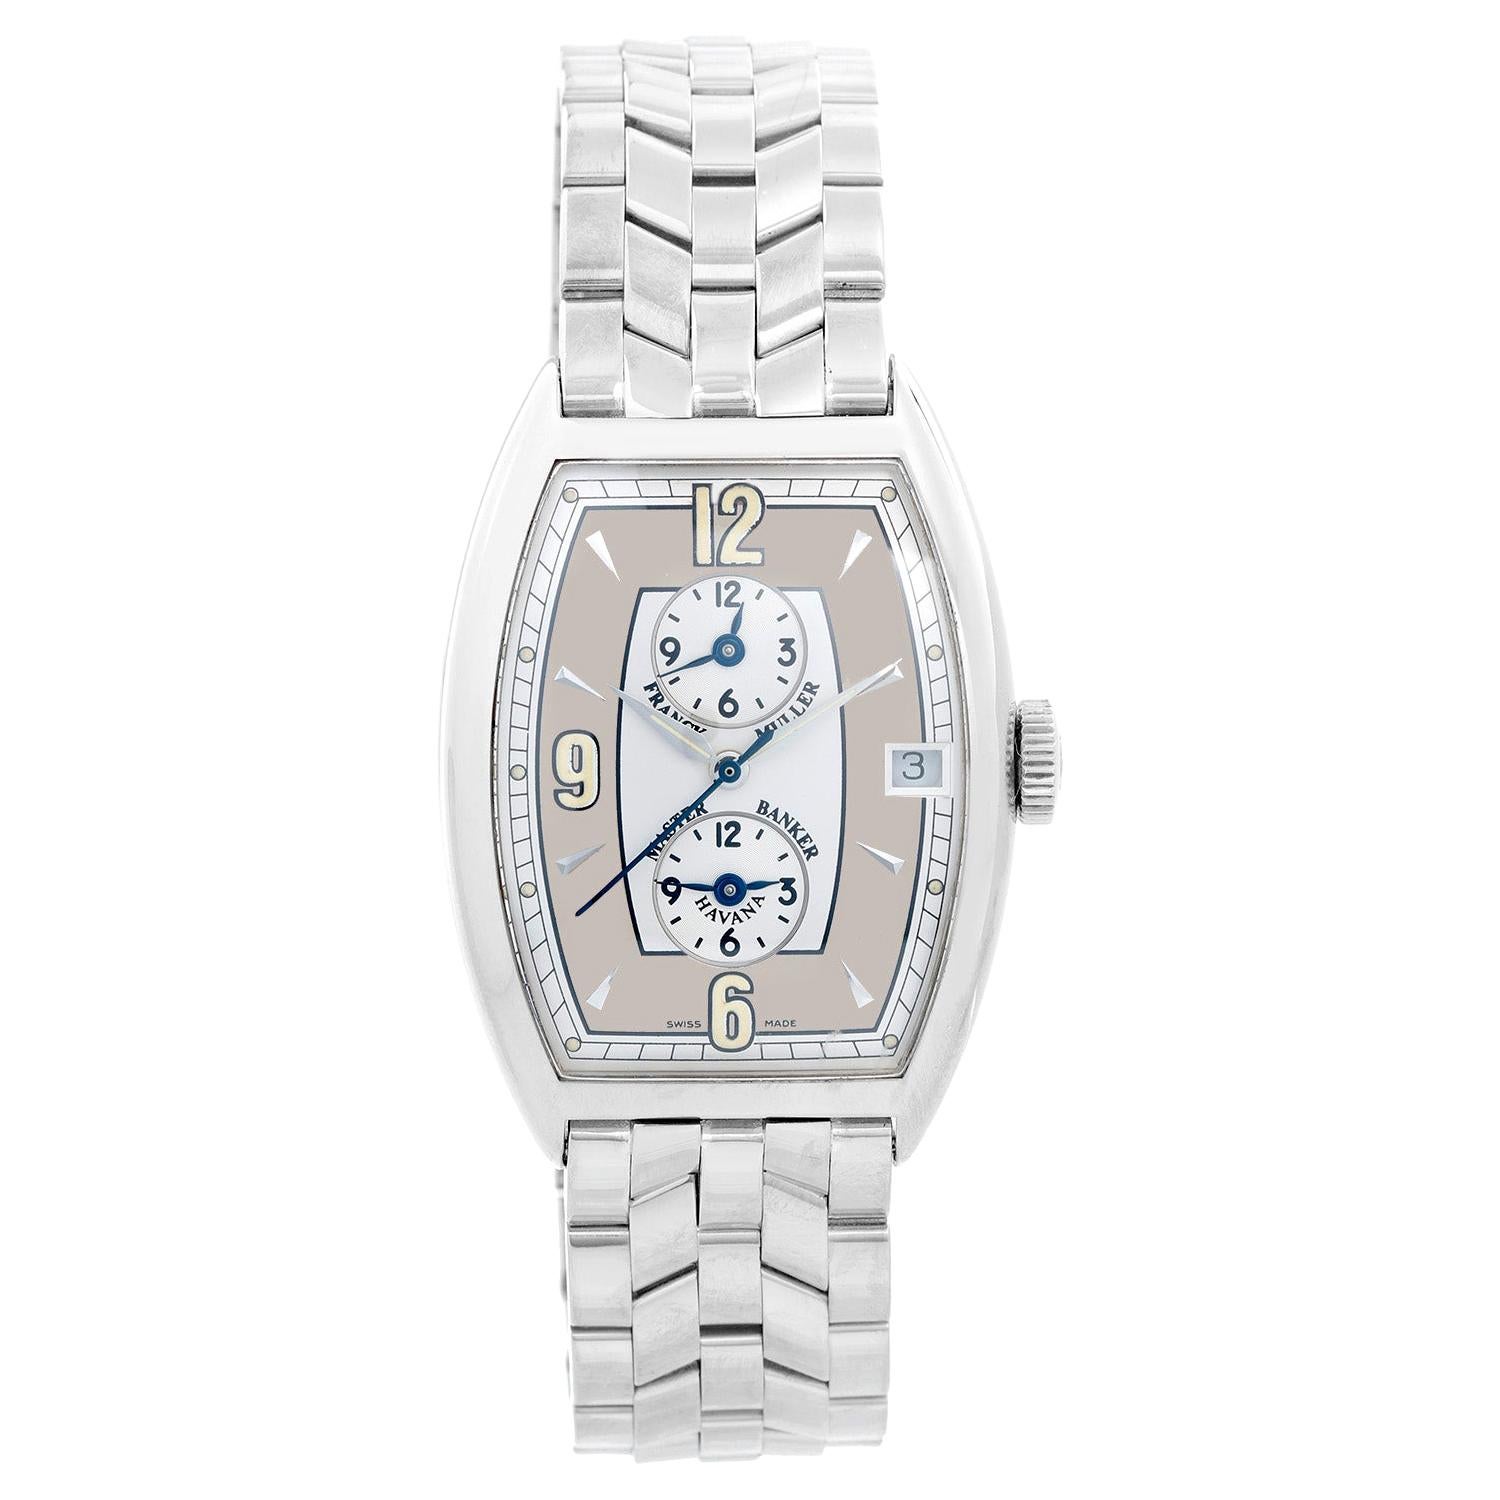 Franck Muller Master Banker White Gold Men's Watch Ref 5850 MB HV